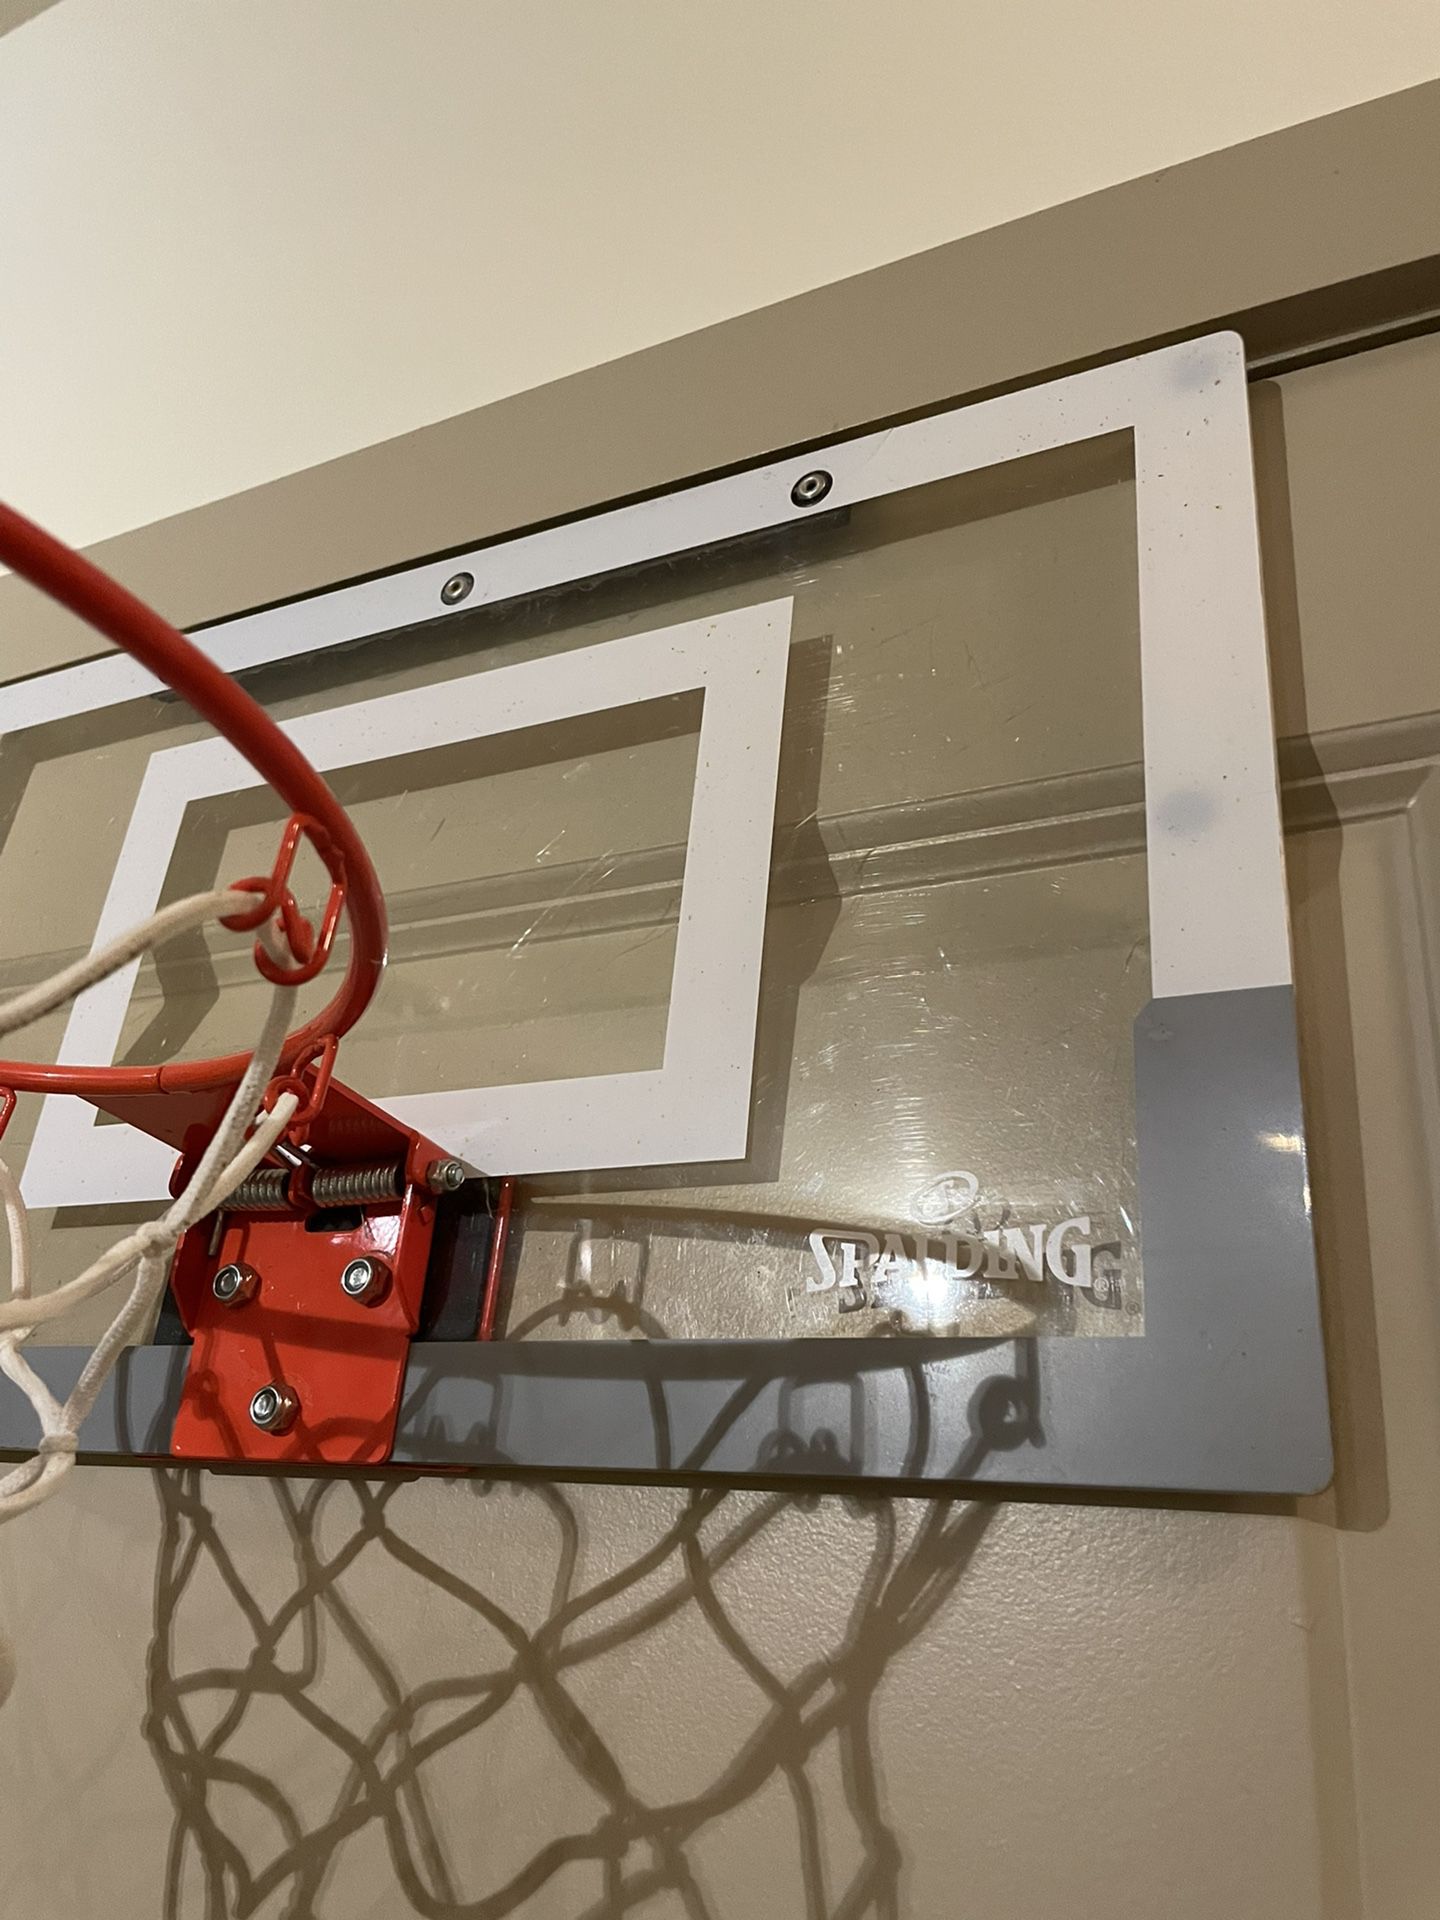 Indoor Mini Basketball Hoop Kids Adults Office Bathroom Bedroom Hang Wall  Door Pole for Sale in Whittier, CA - OfferUp